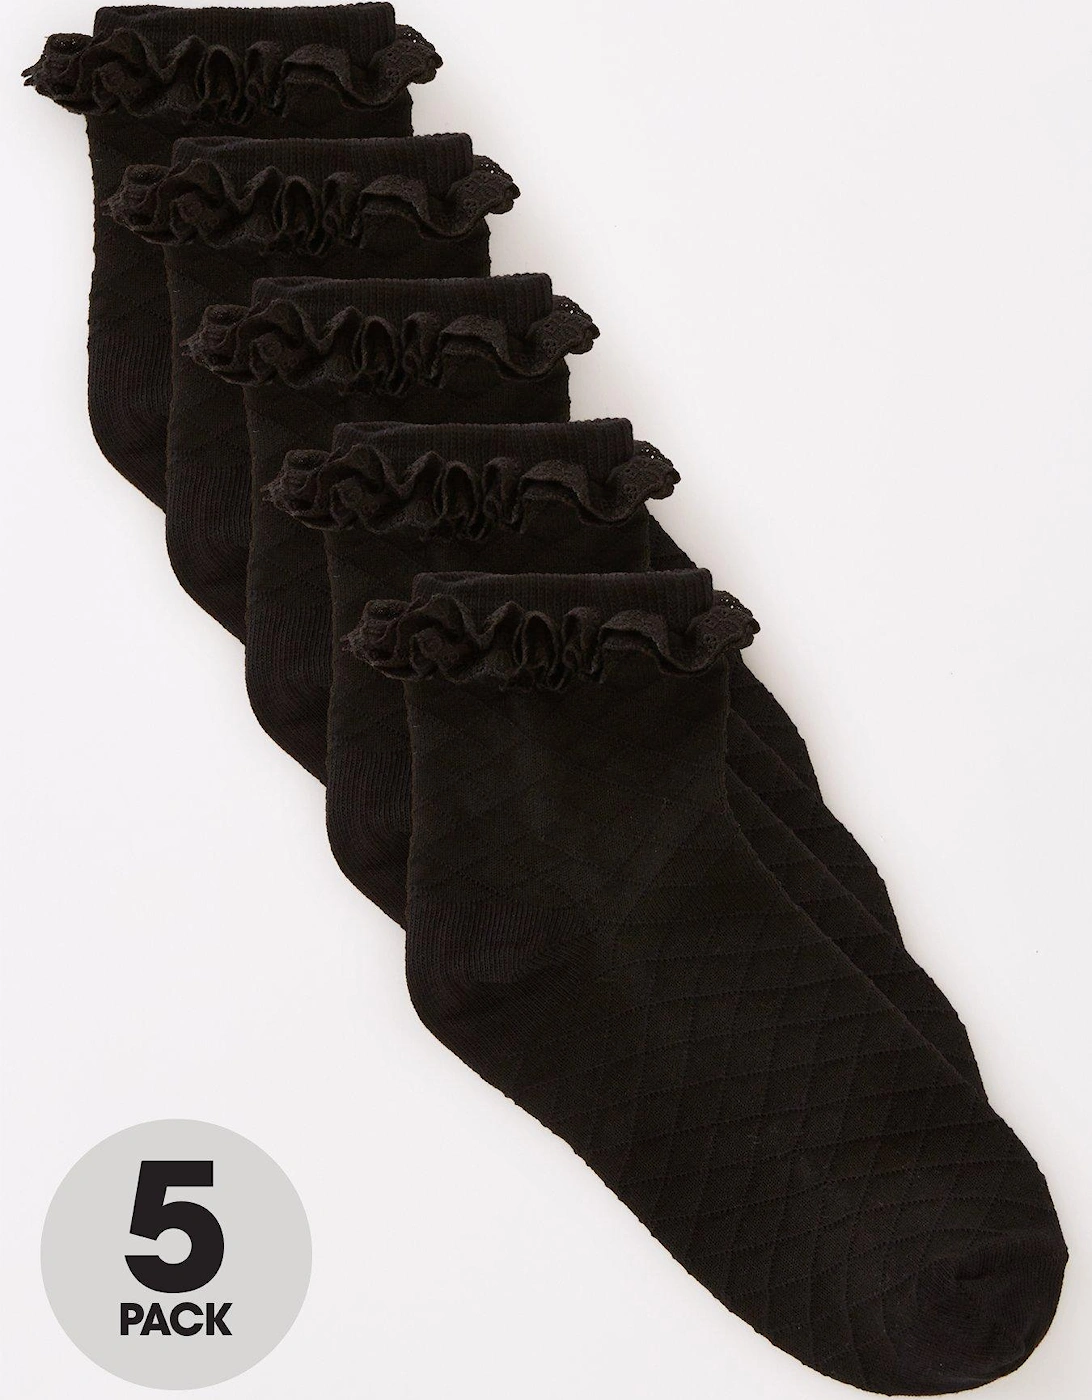 Girls 5 Pack Black Frill Socks - Black, 4 of 3